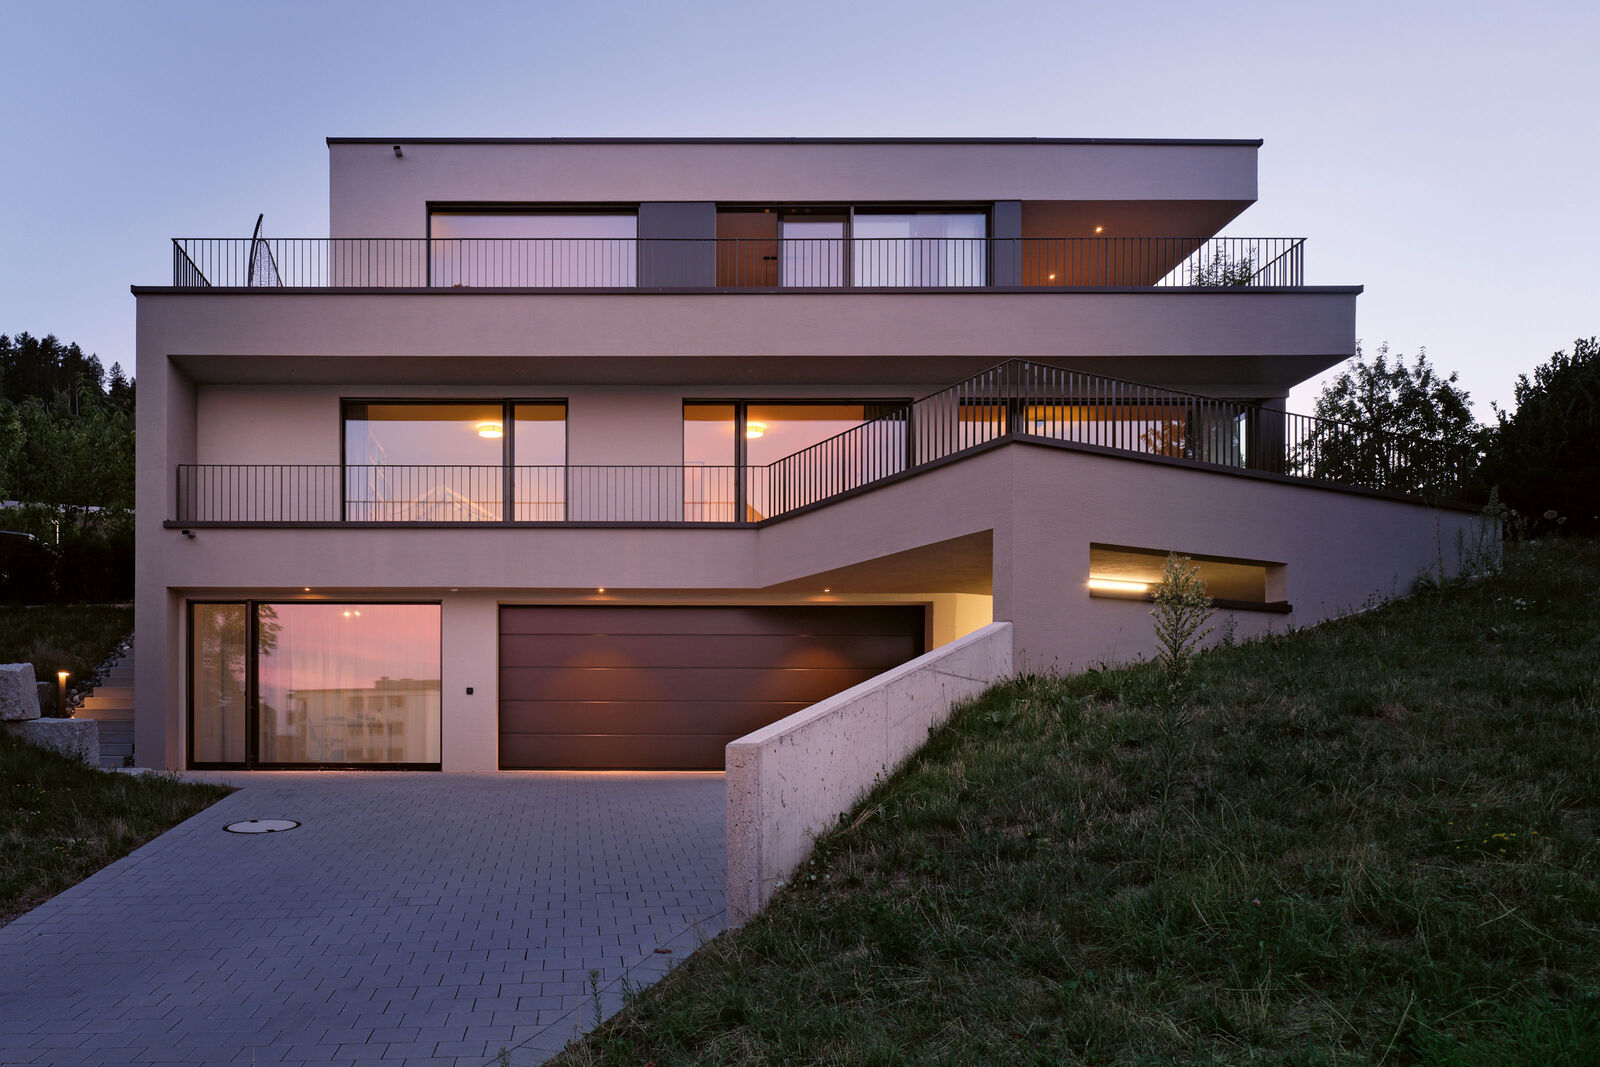 Das Haus «DUNE» besteht aus einer dreigeschossigen Wohneinheit und ist an die Hanglage angepasst. © Karin Nuetzi-Weisz